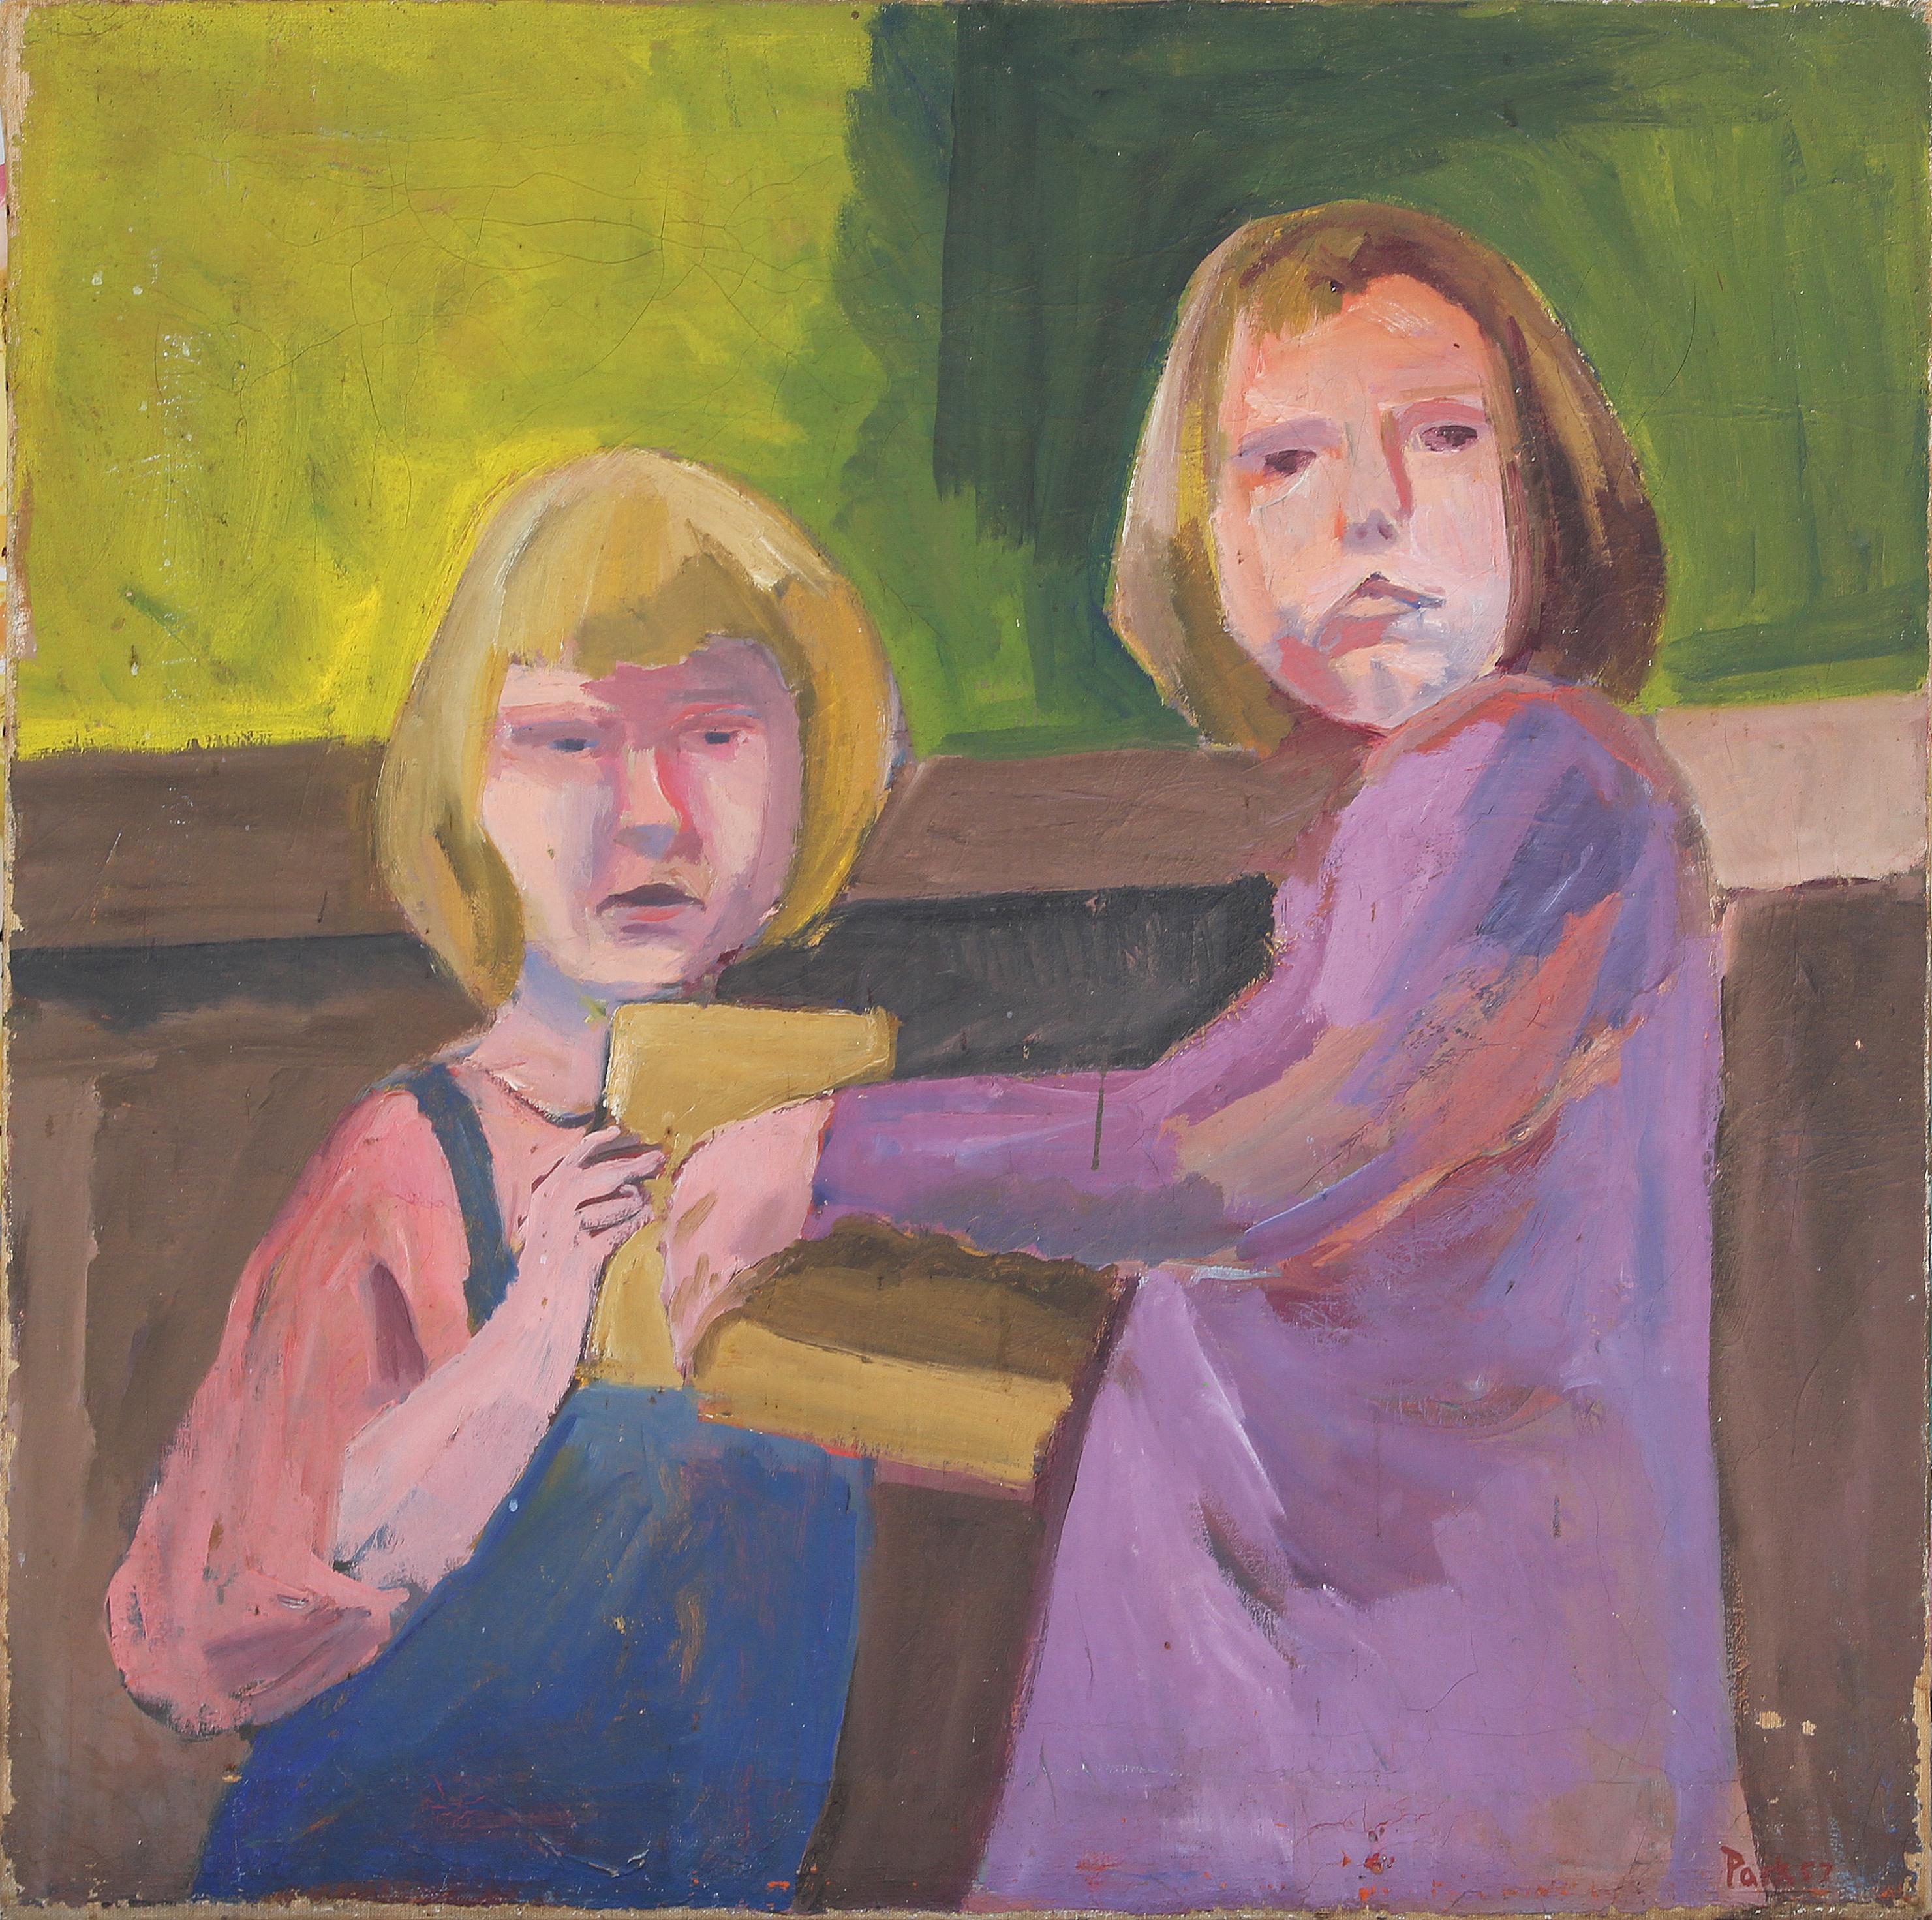 Grünes, violettes und rosafarbenes abstraktes figuratives Gemälde zweier junger Mädchen (möglicherweise die Töchter von David Park), das dem amerikanischen Künstler David Park zugeschrieben wird. Dieses Gemälde zeigt zwei junge Mädchen, die im